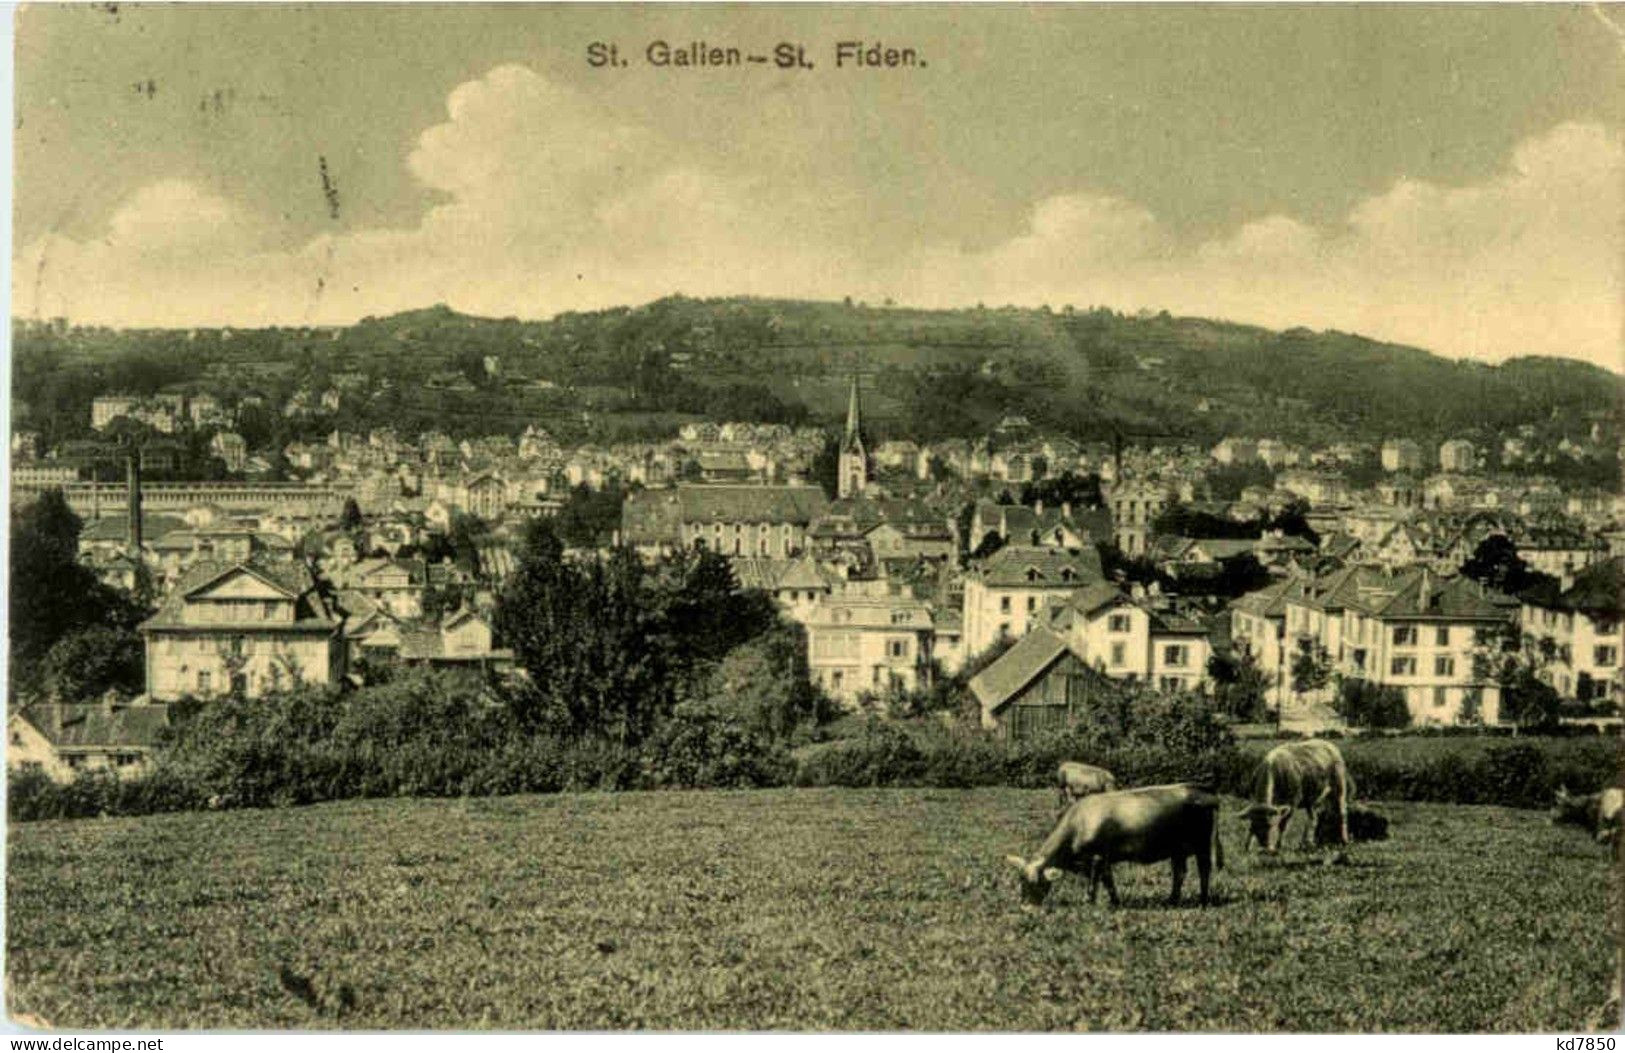 St. Gallen - St. Fiden - Sankt Gallen